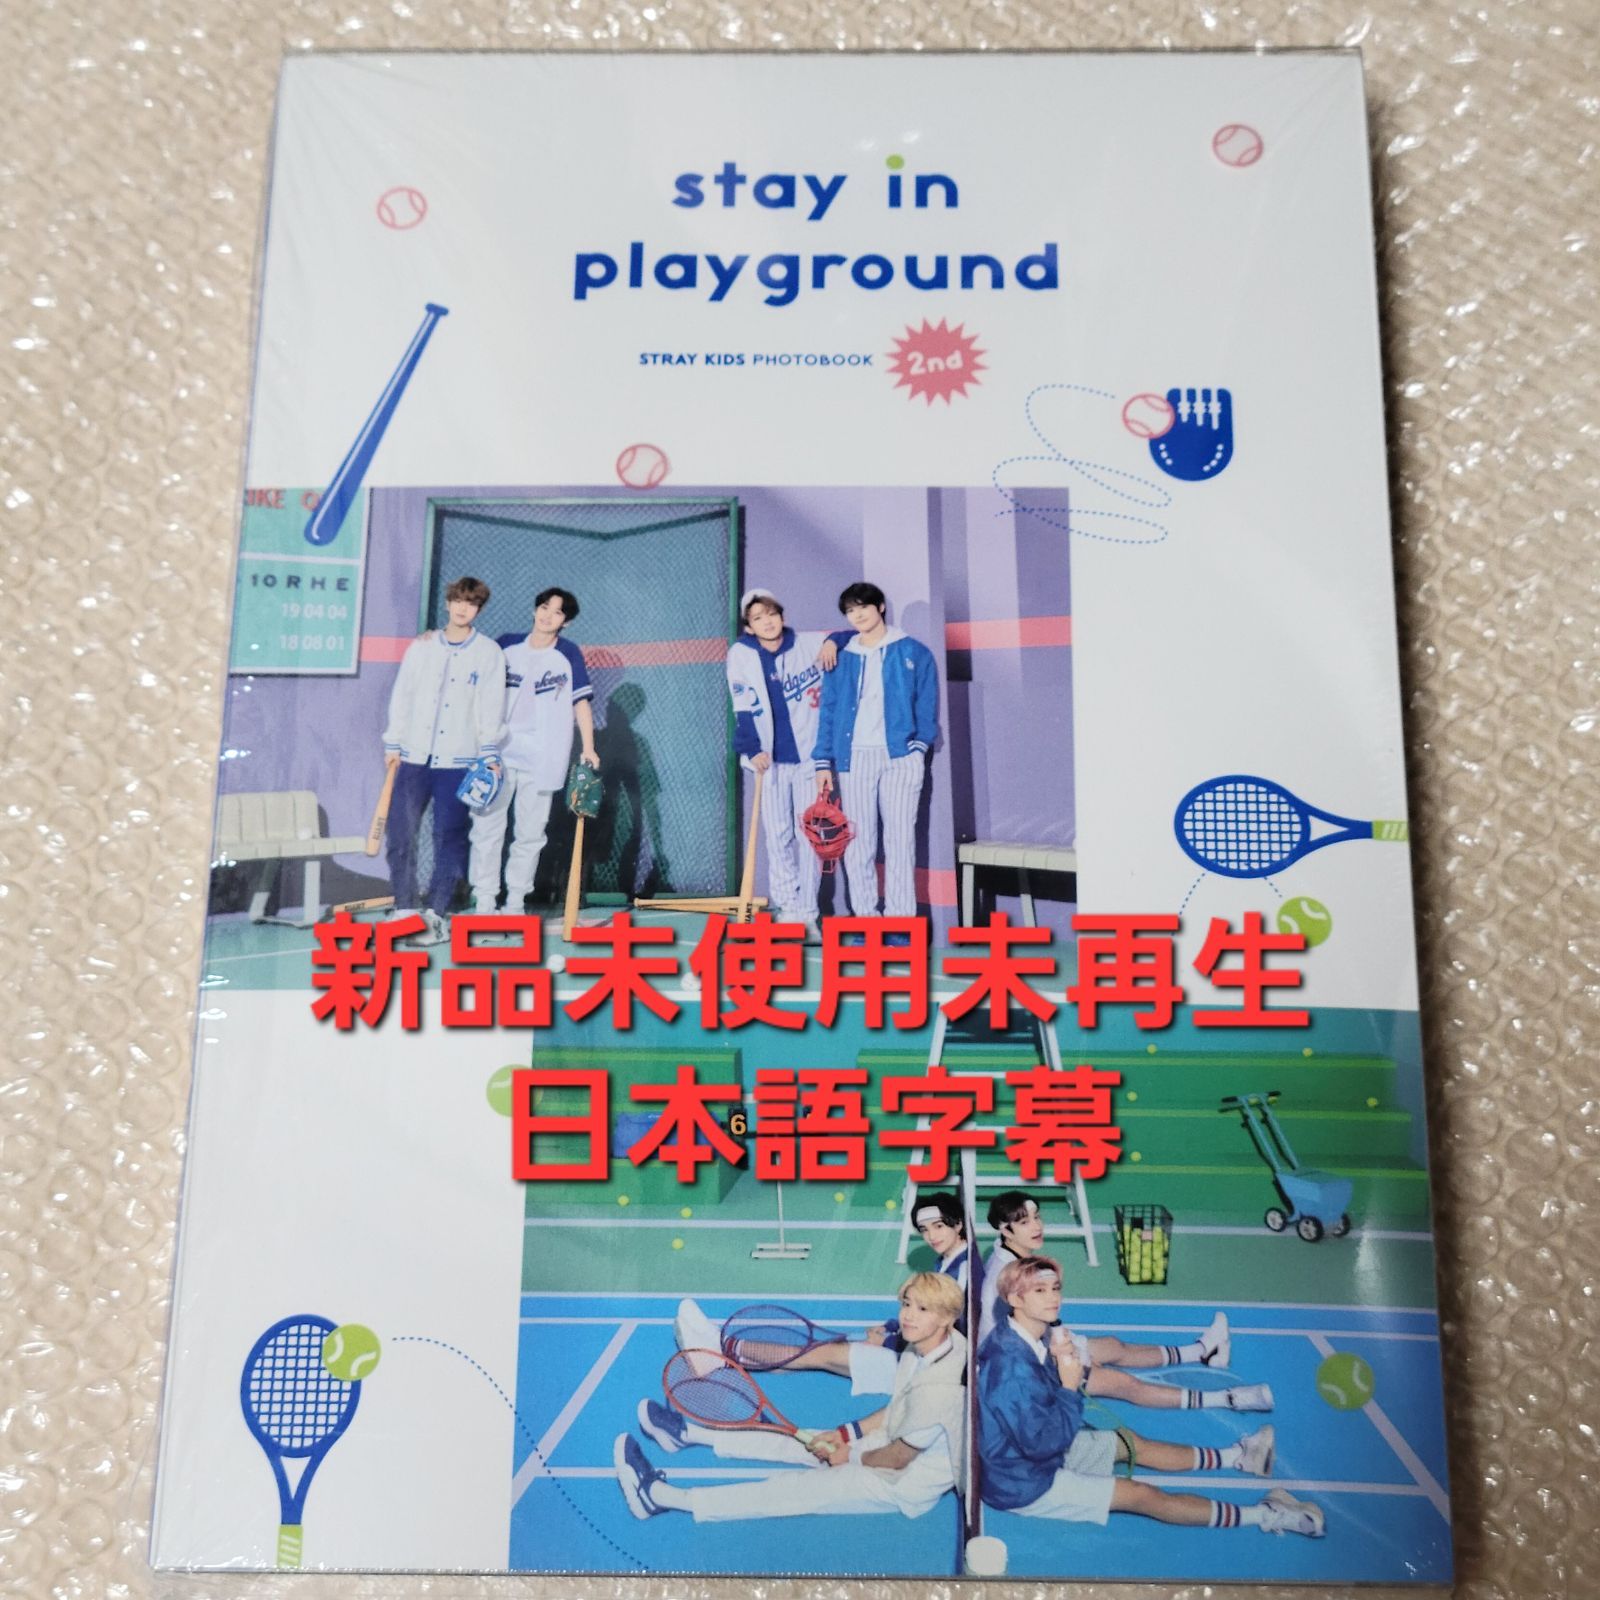 straykids 公式 Stay in playground 写真集 開封済 - メルカリ